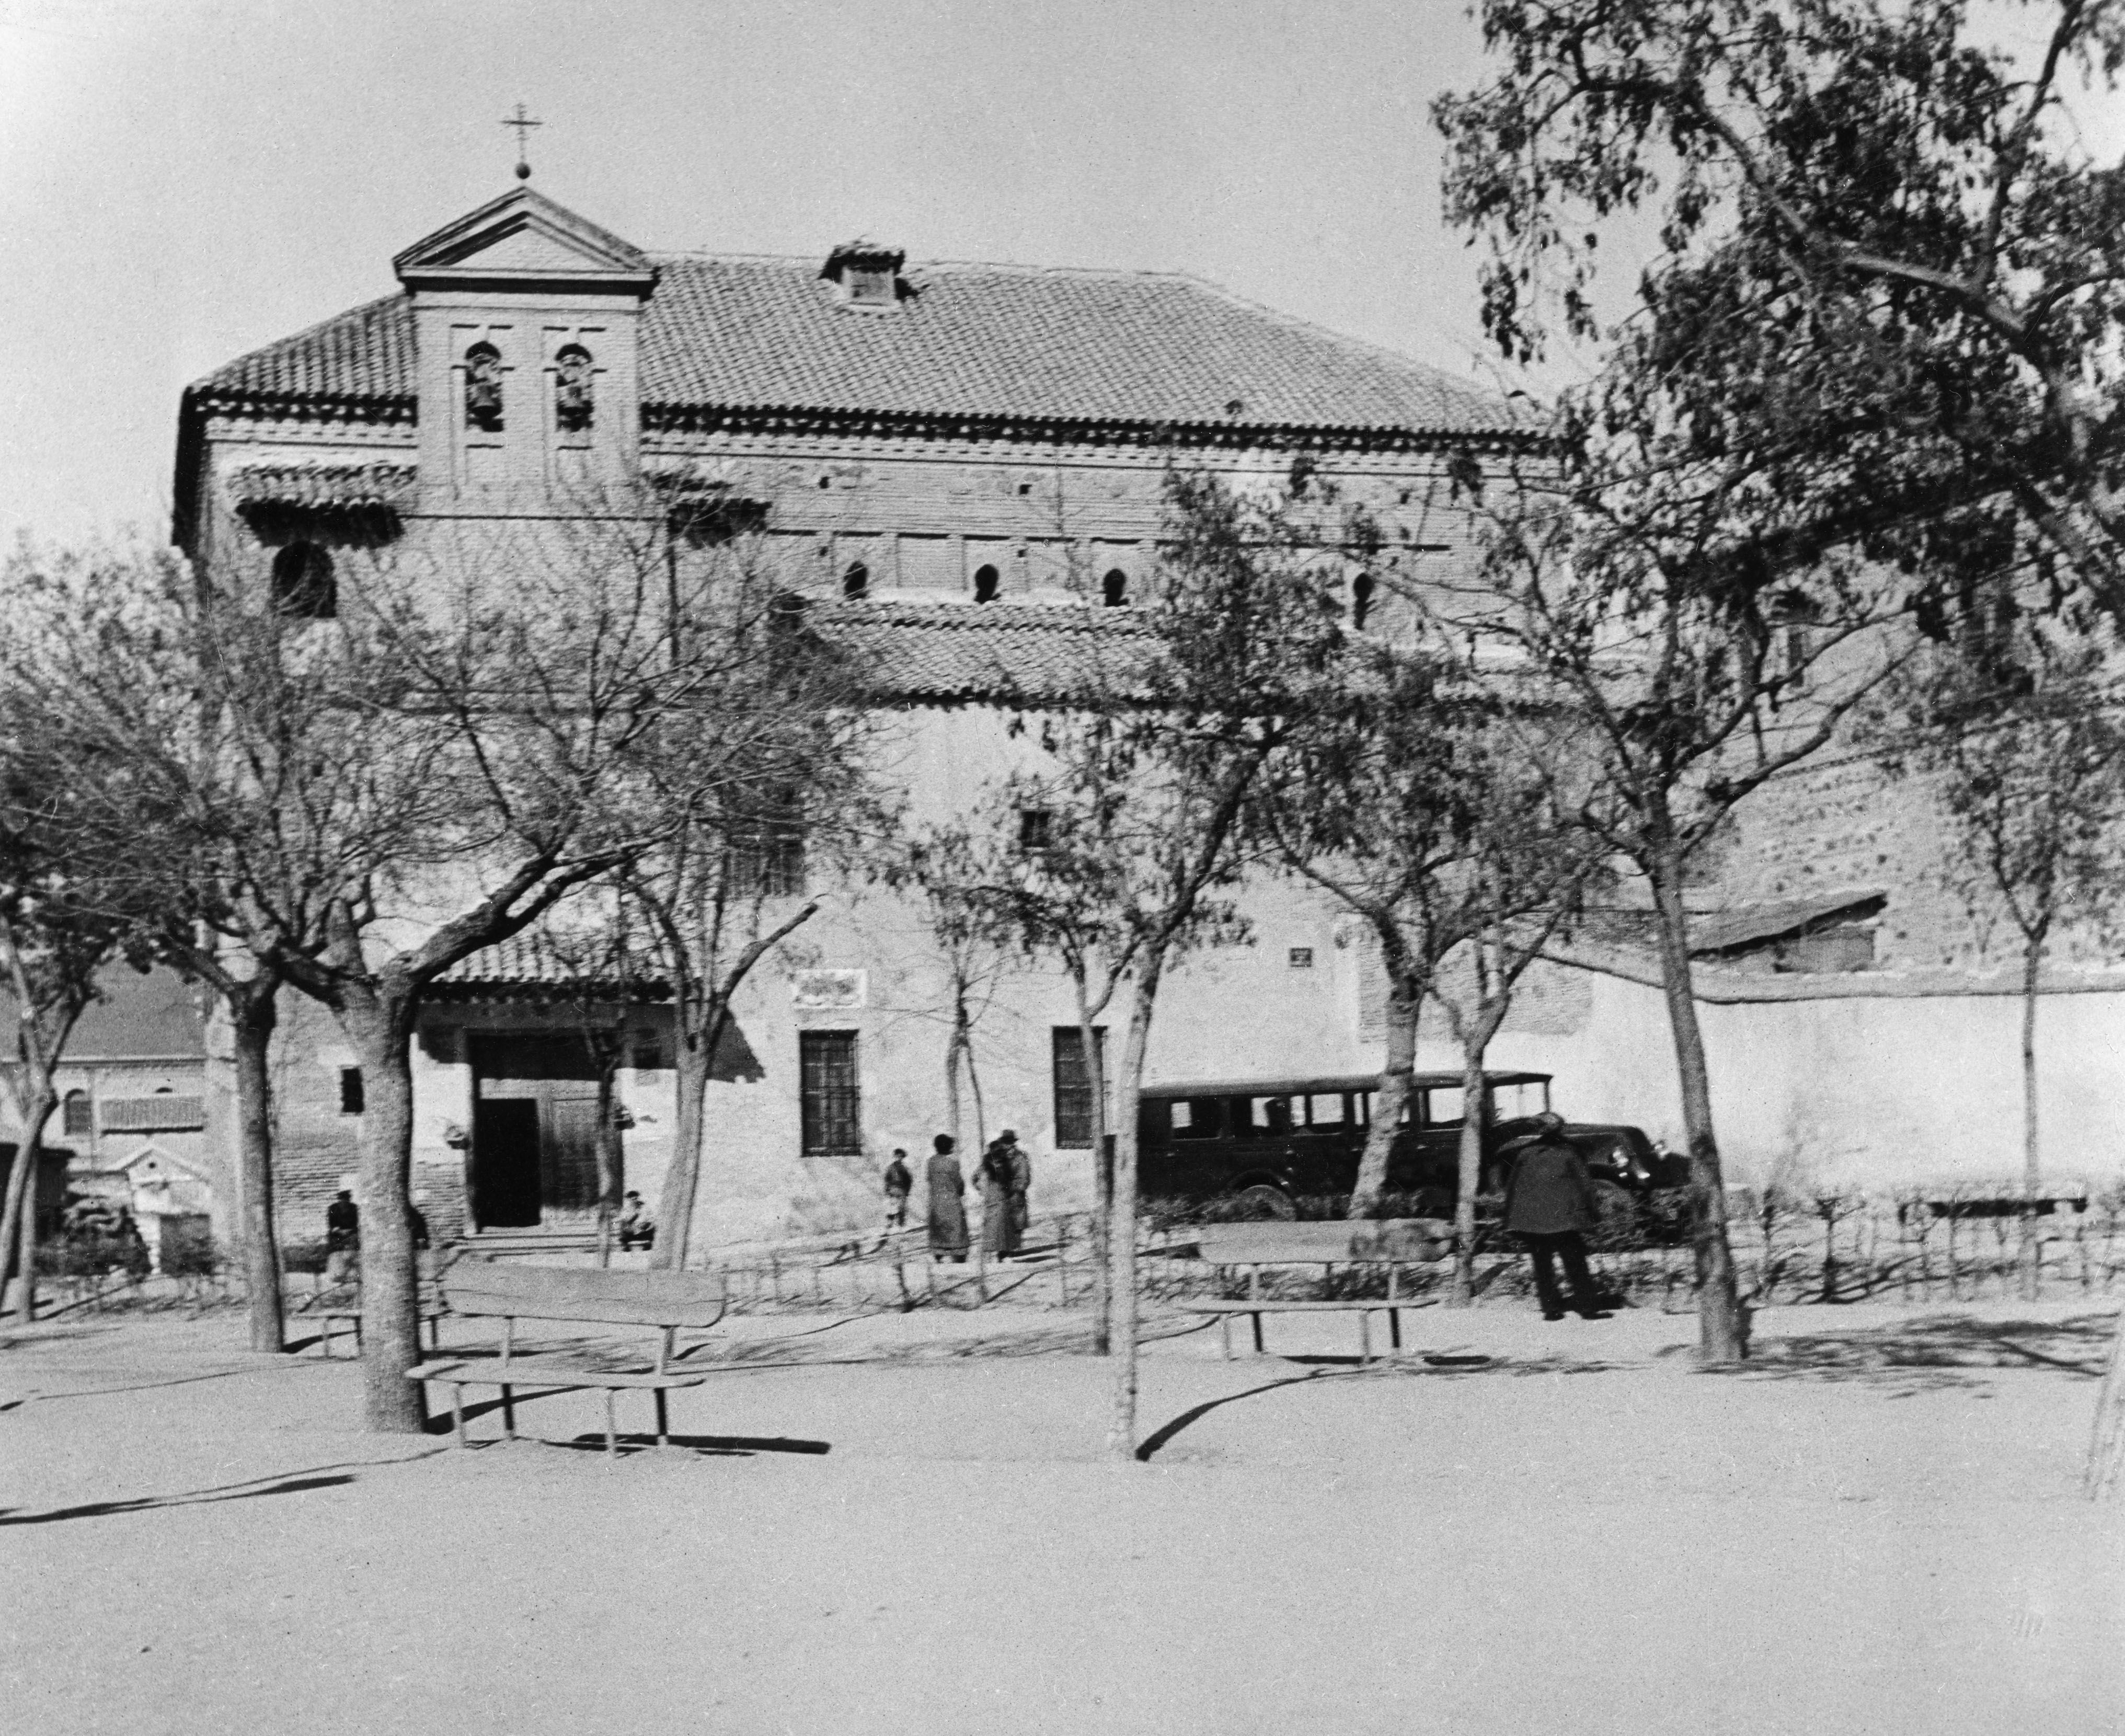 Sinagoga del Tránsito en 1935, fotografía de Abraham Pisarek, propiedad de AKG images